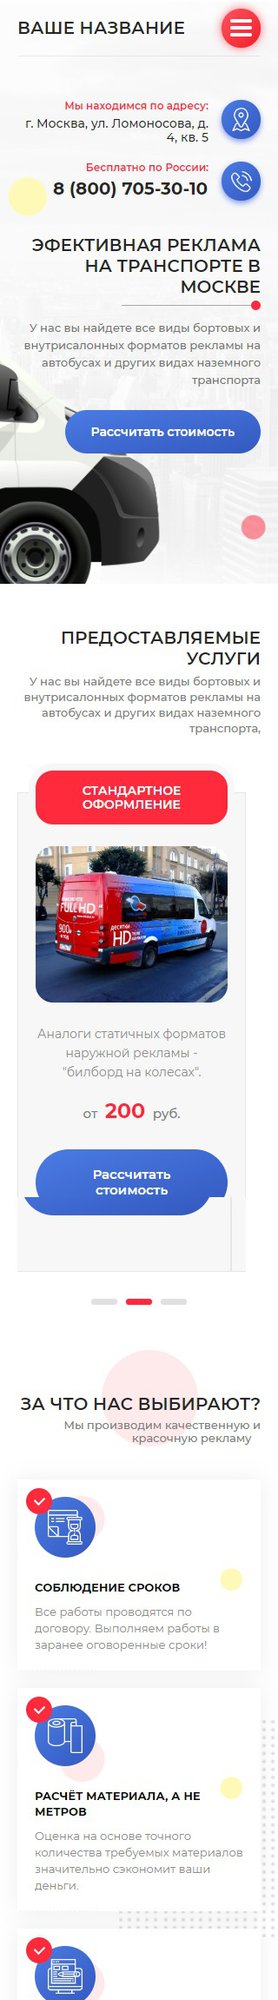 Готовый Сайт-Бизнес № 2243700 - Реклама на транспорте (Мобильная версия)